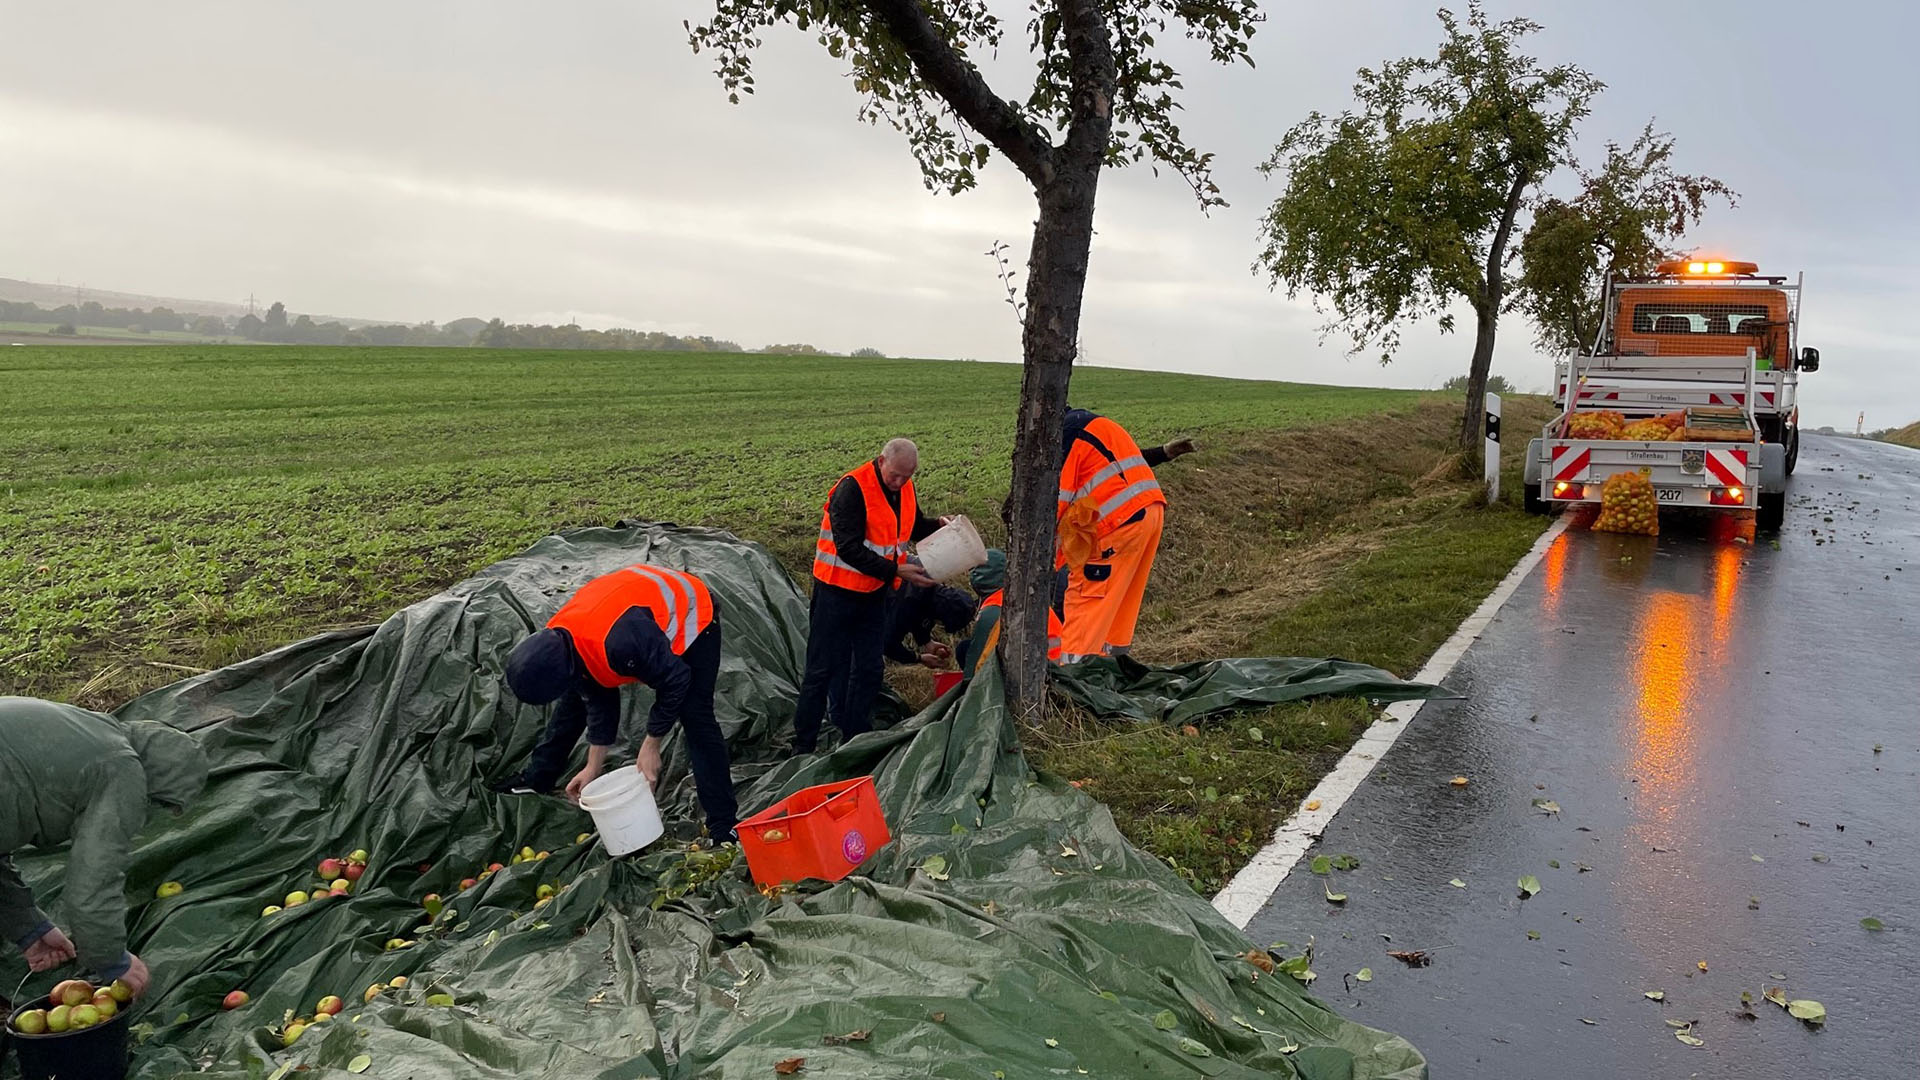 Drei Männer in orangen Warnwesten sammeln bei einem Baum am Straßenrand Äpfel auf. Im Hintergrund steht ein oranges Einsatzfahrzeug mit Anhänger, auf dem Apfelsäcke zu sehen sind.